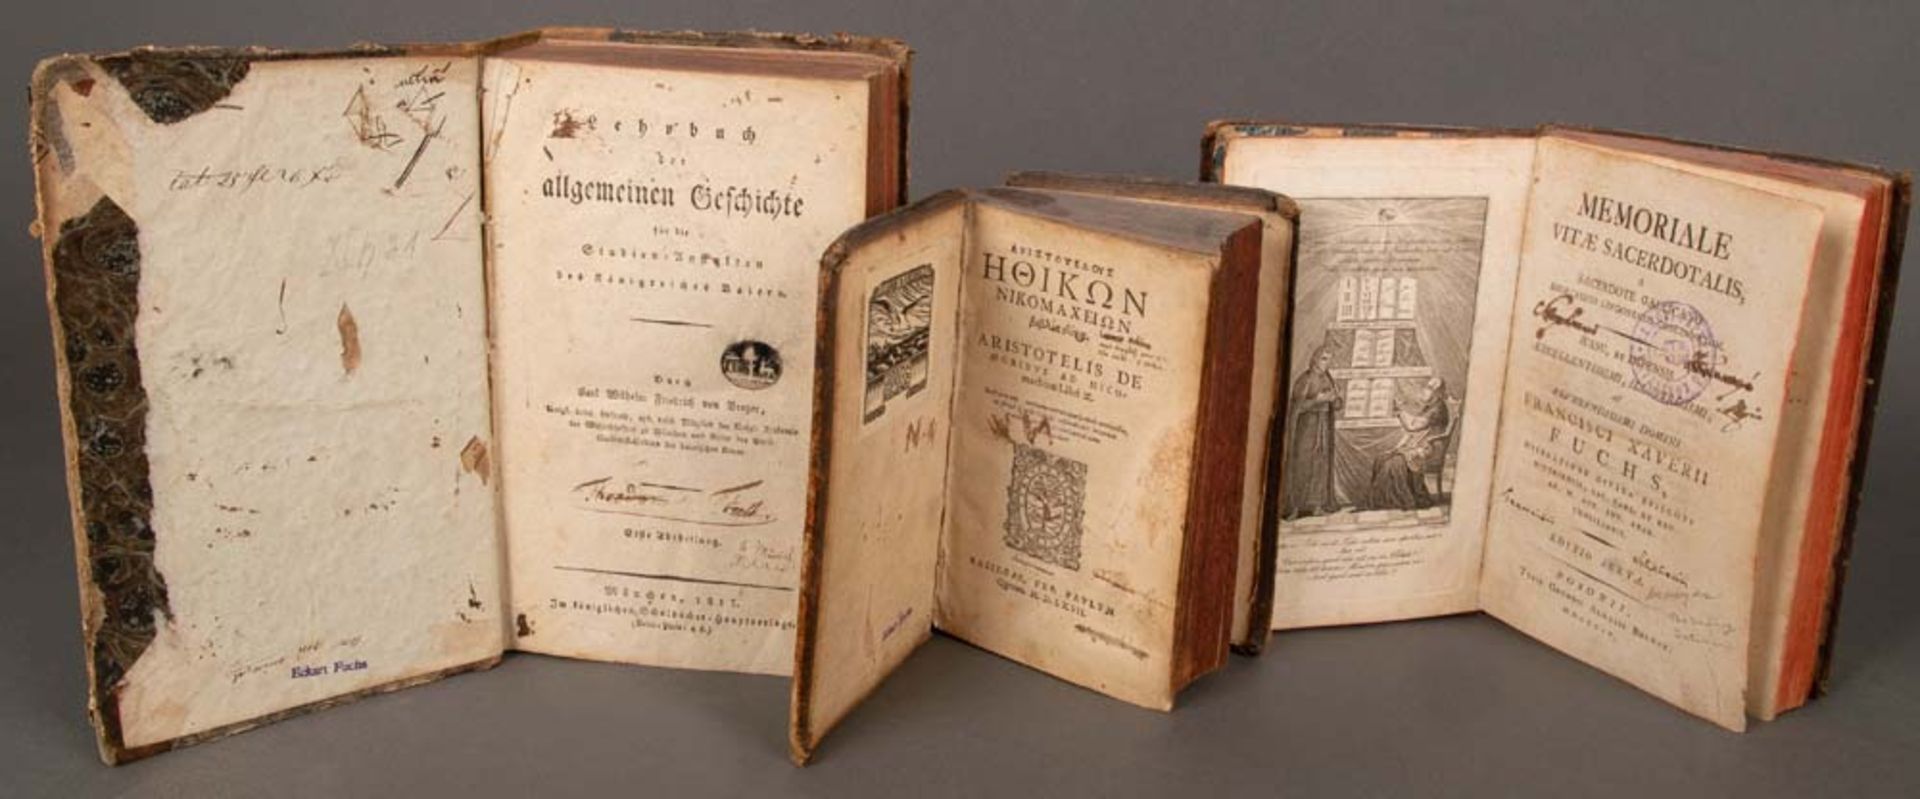 „ARISTOTELIS DE MORIBUS AD NICO machum Libri X“, Basel 1567; „MEMORIALE VITAE SACERDOTALIS“, POSONii